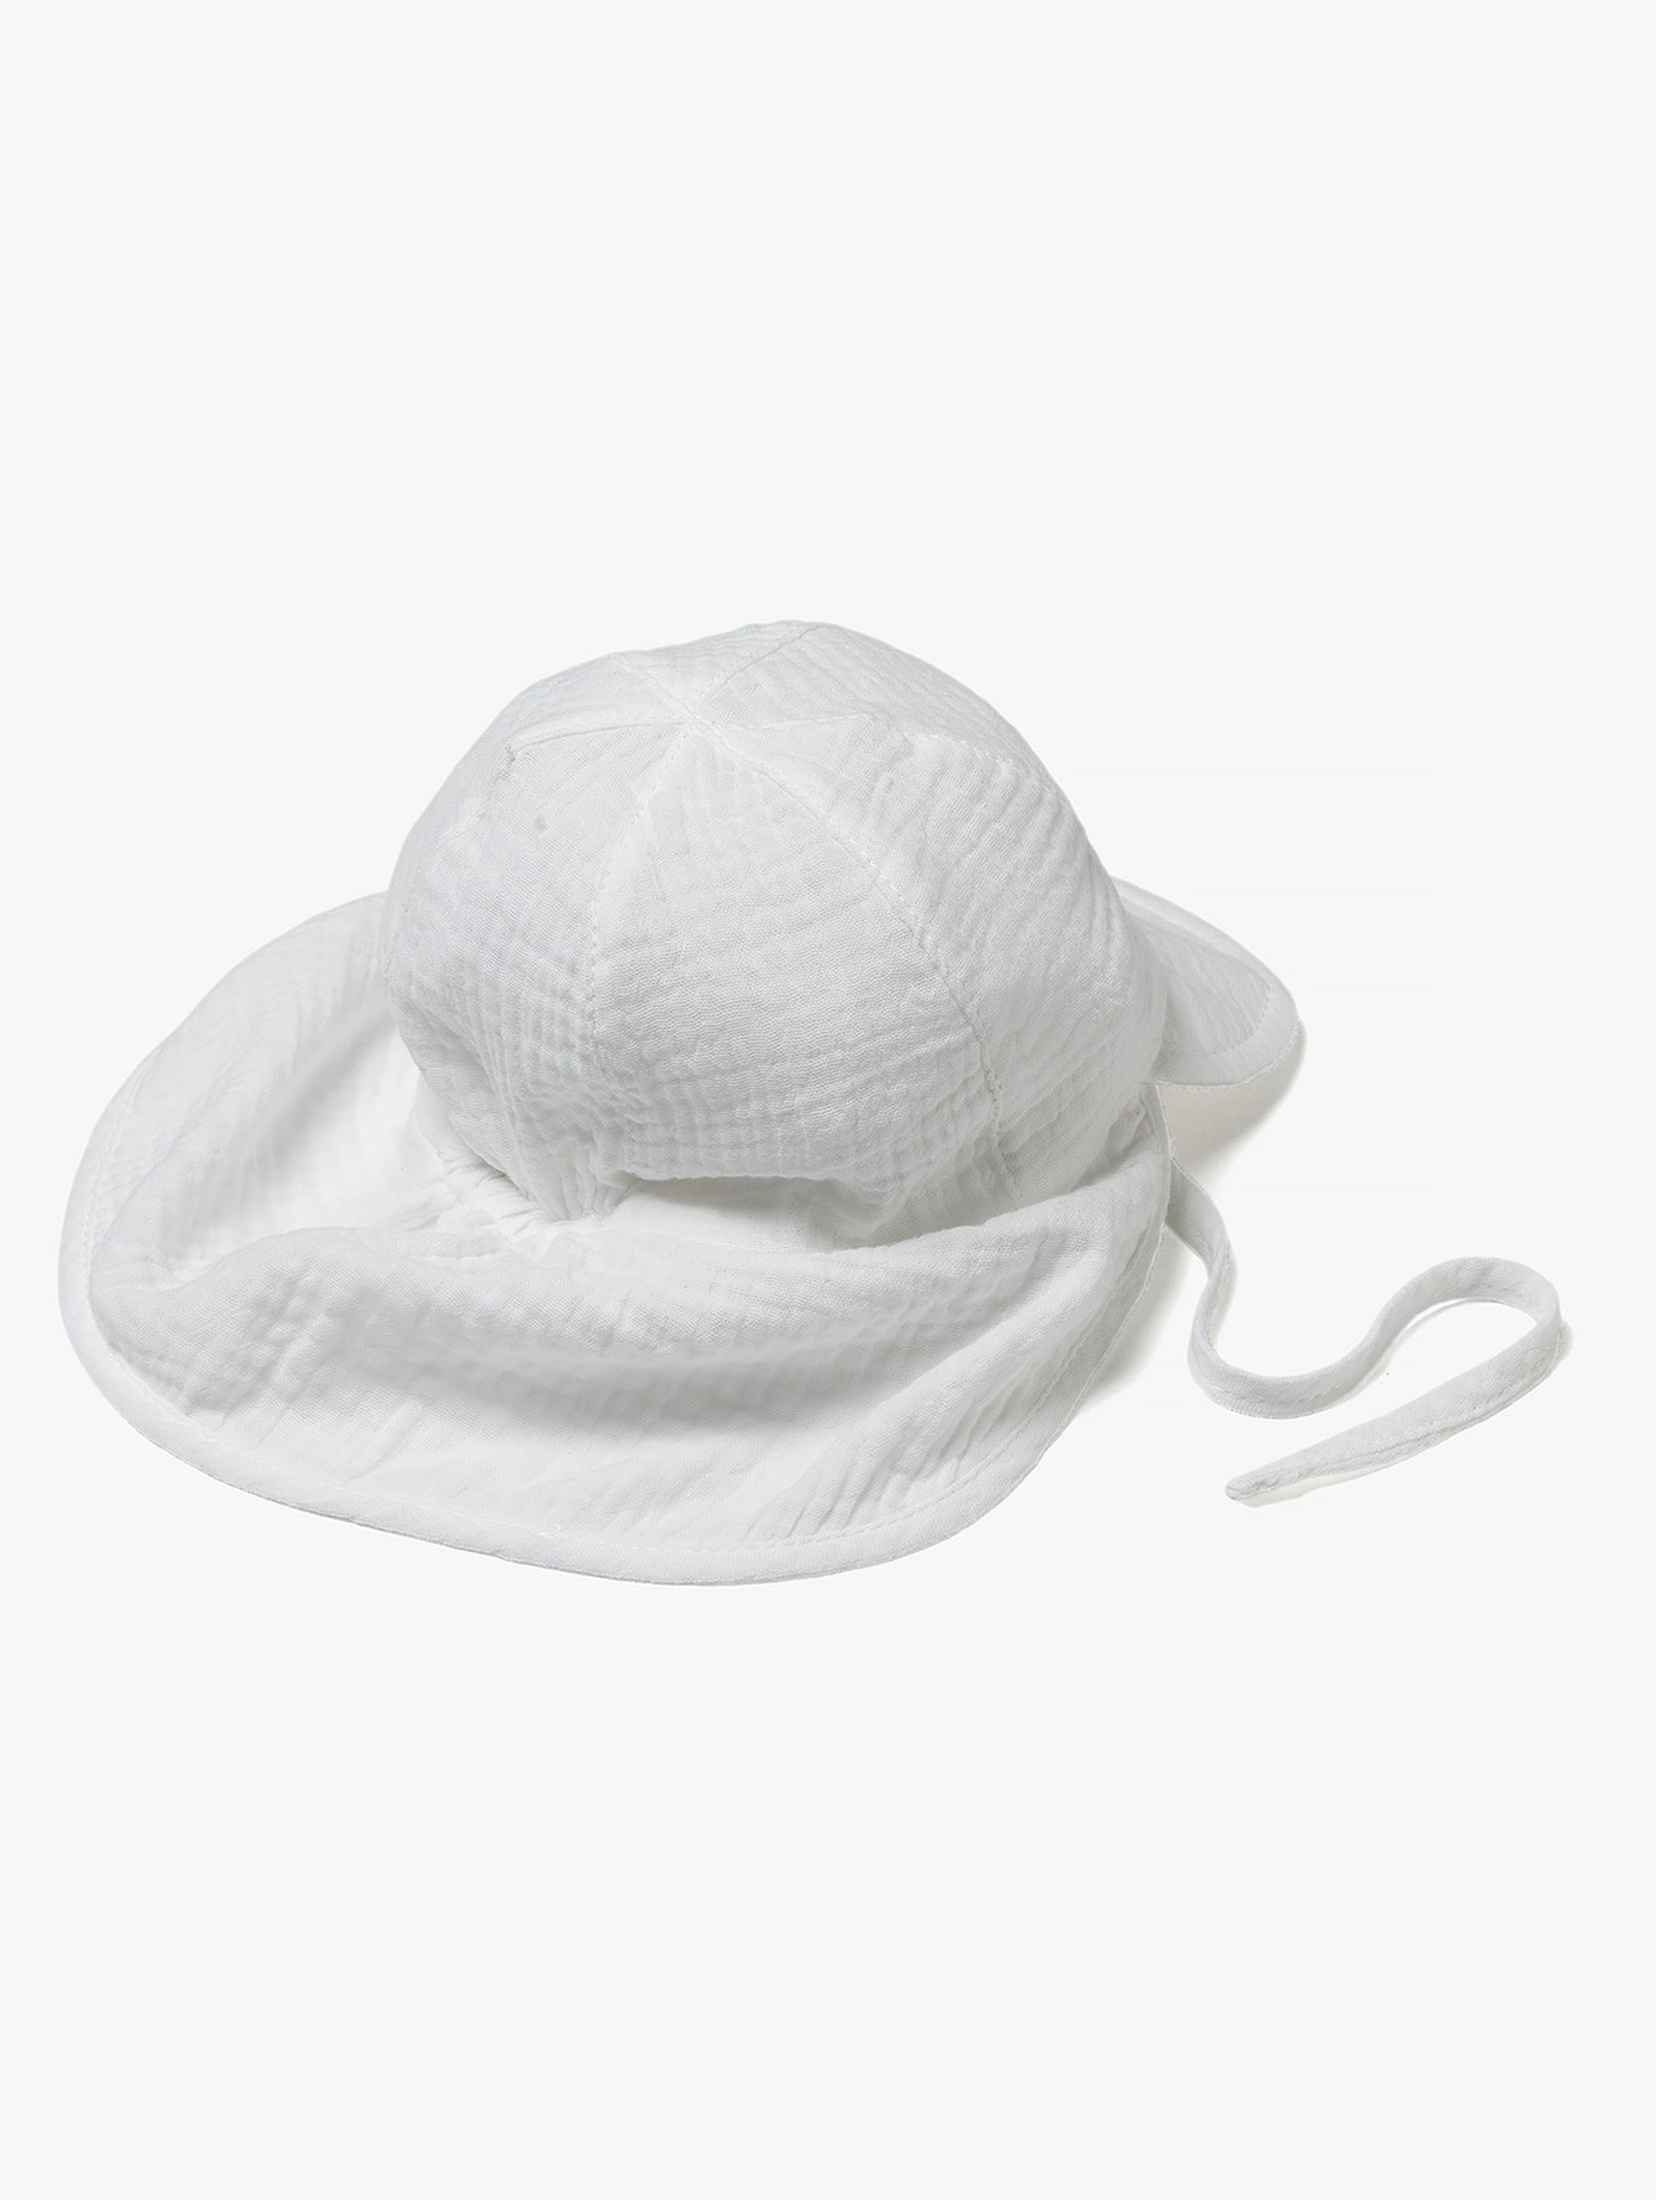 Biała tkaninowa czapka z daszkiem dla niemowlaka - 5.10.15.